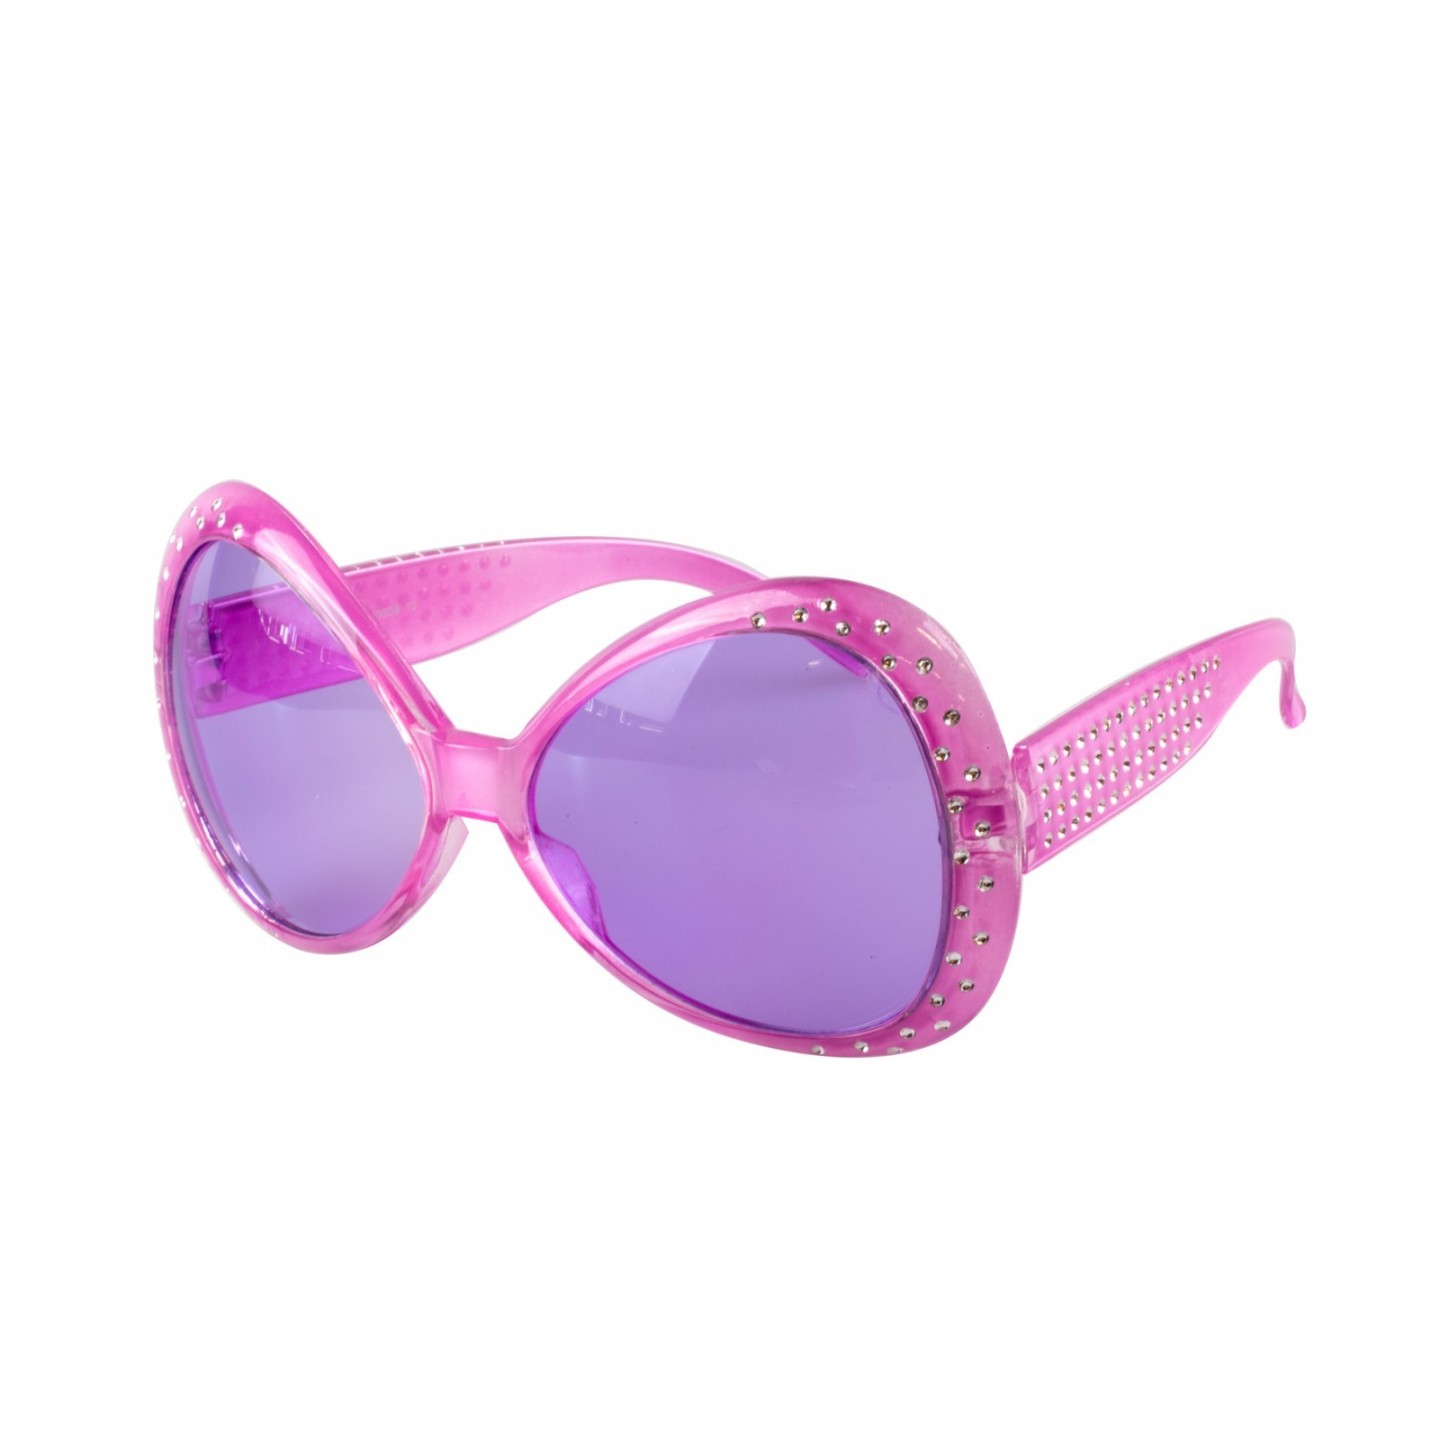 Feestbril paars bril carnaval disco partybril